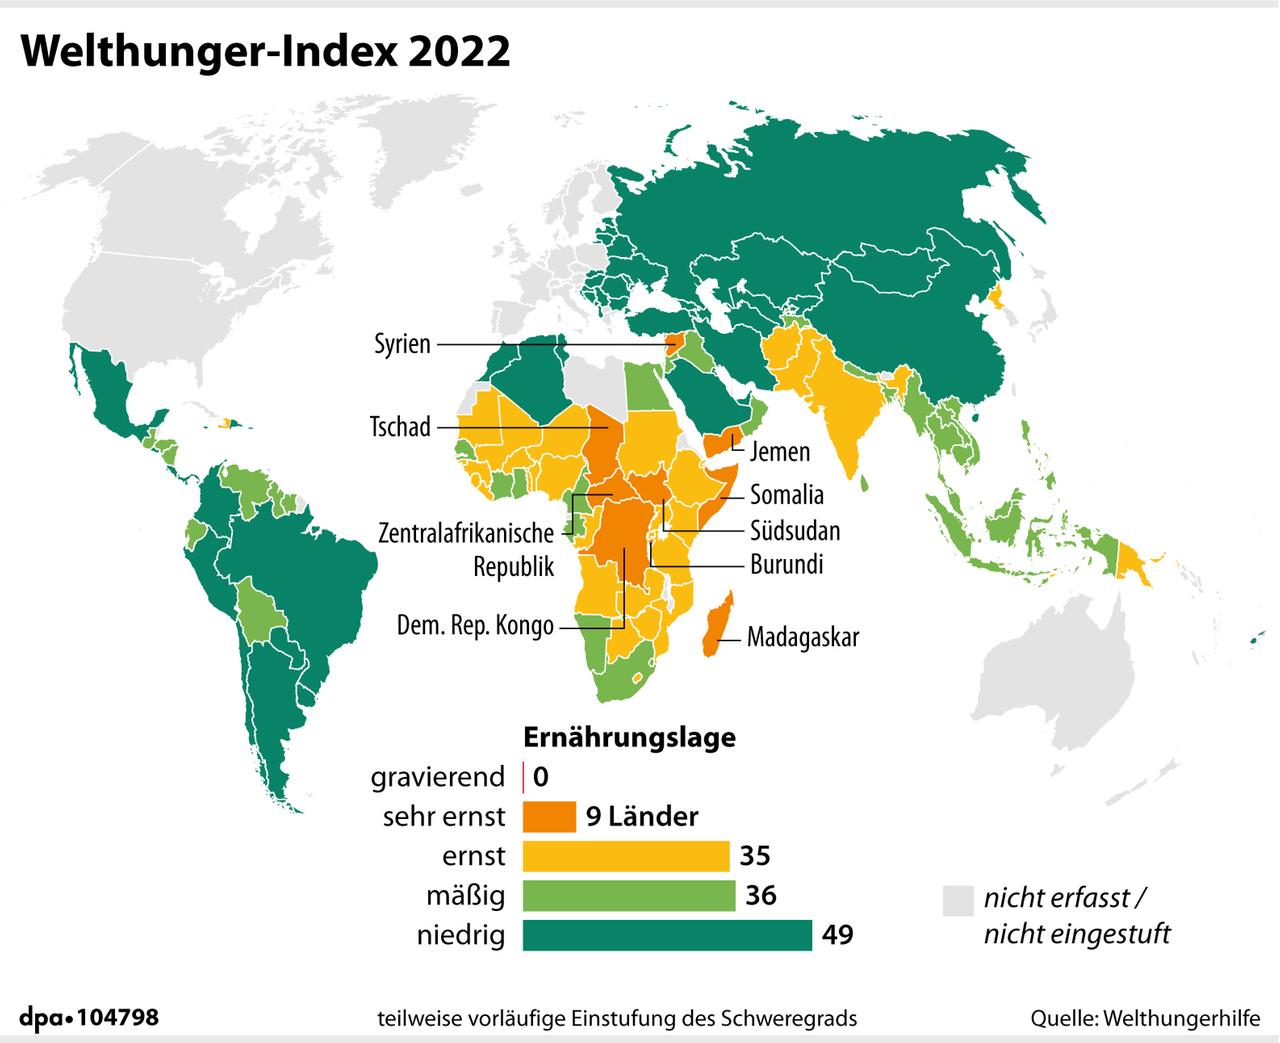 Die Grafik zum Welthungerindex zeigt eine Weltkarte mit je nach Ernährungslage unterschiedlich eingefärbten Regionen